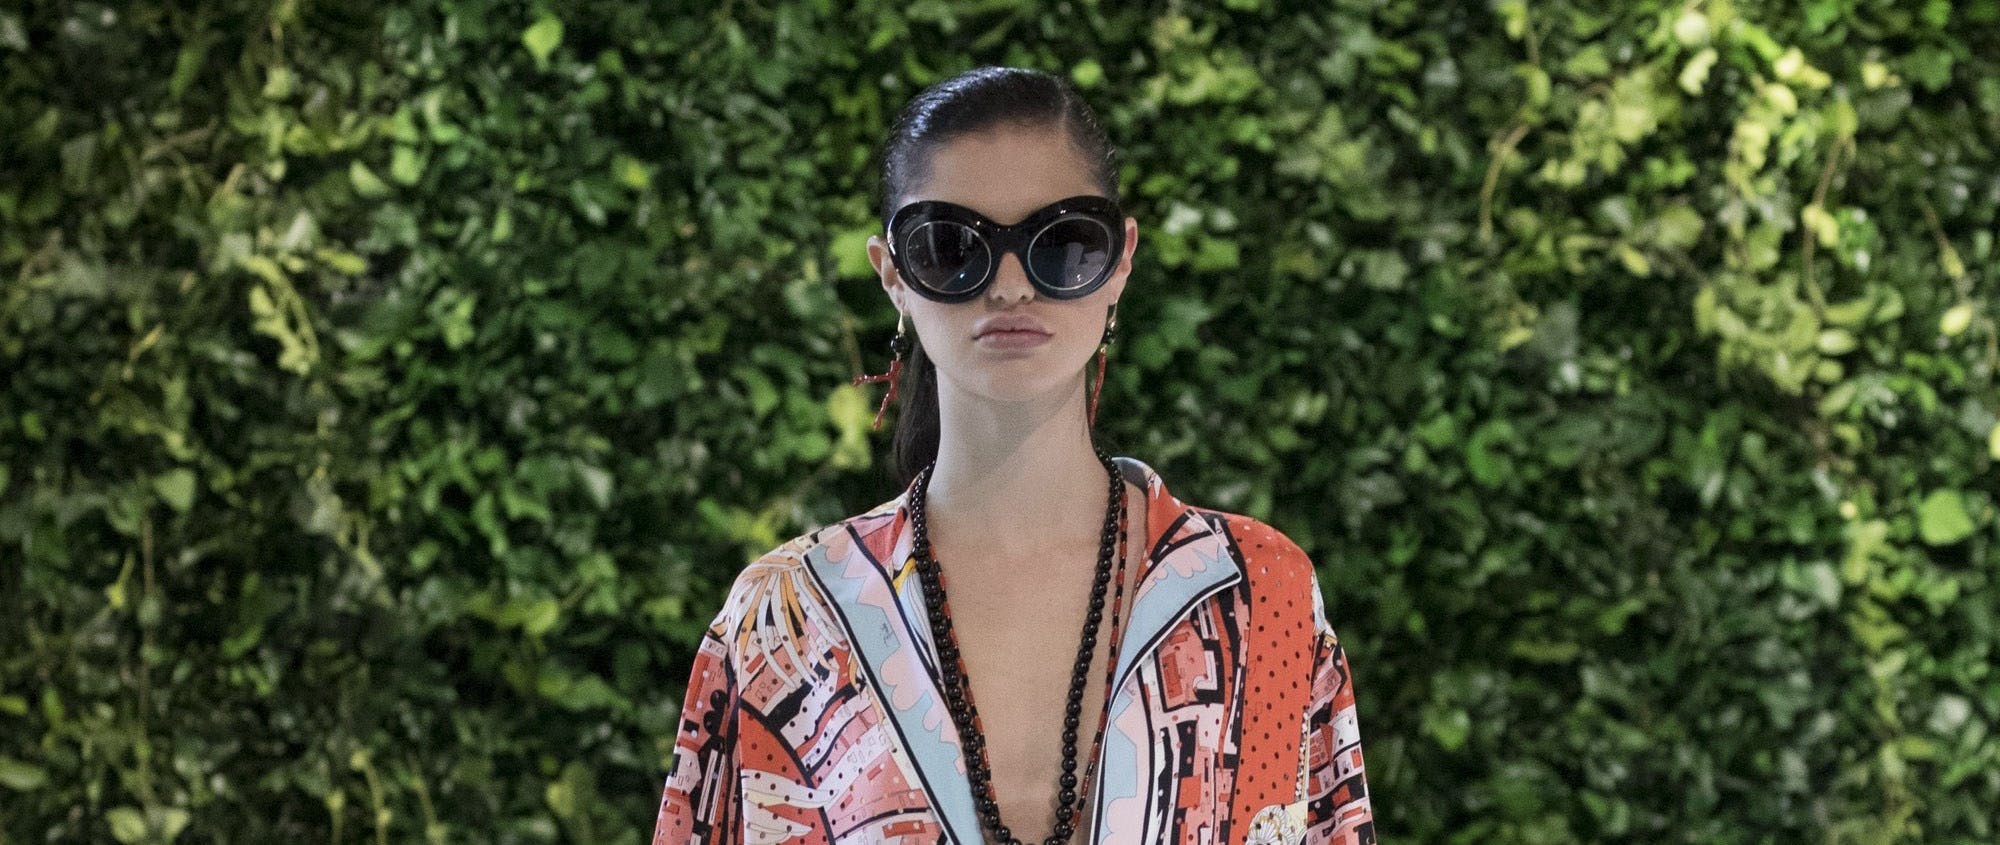 person human sunglasses accessories accessory goggles skin